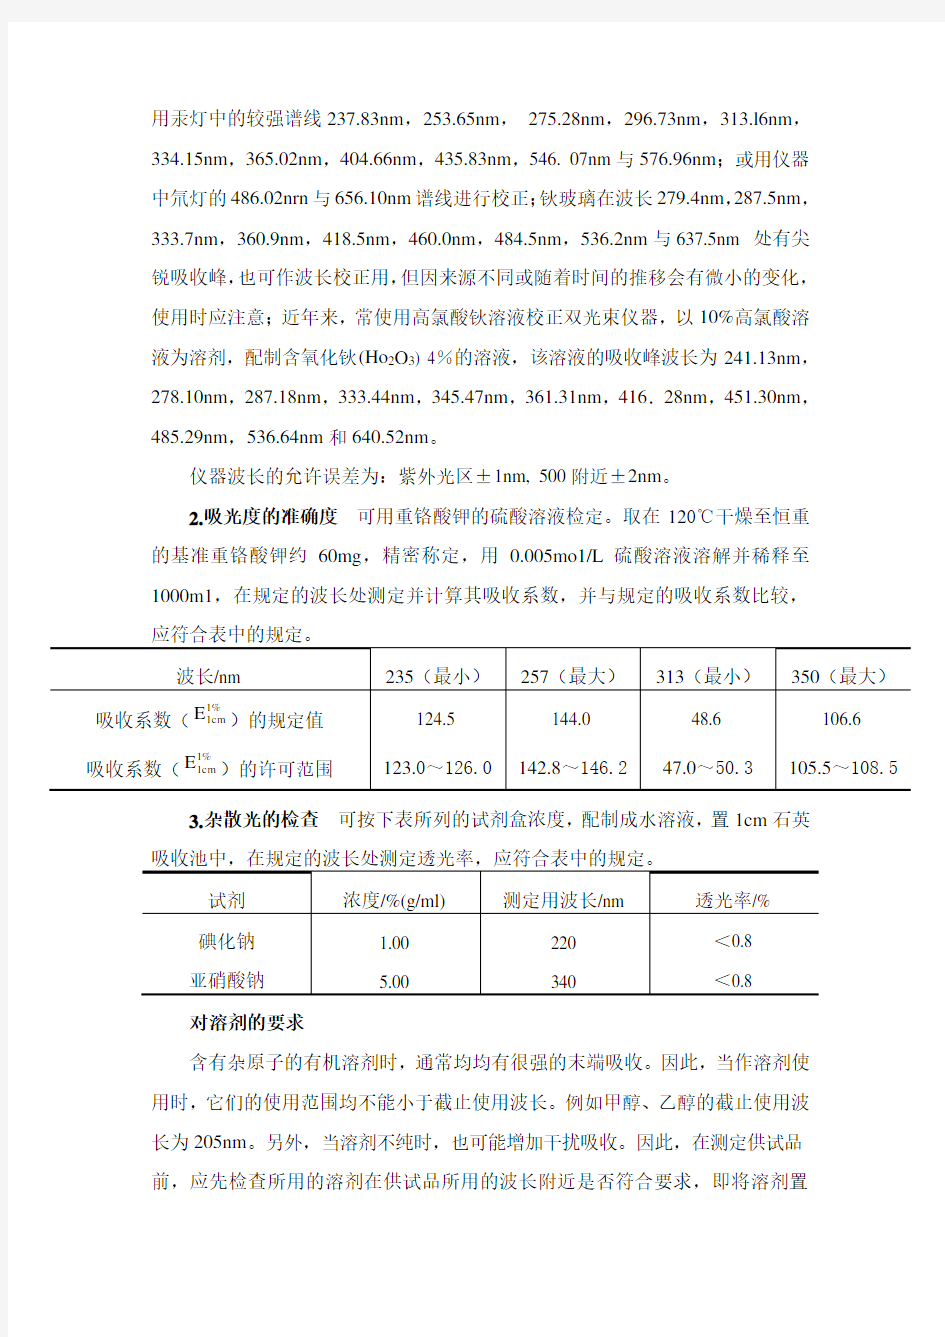 中国药典2010年版一部附录 (二)